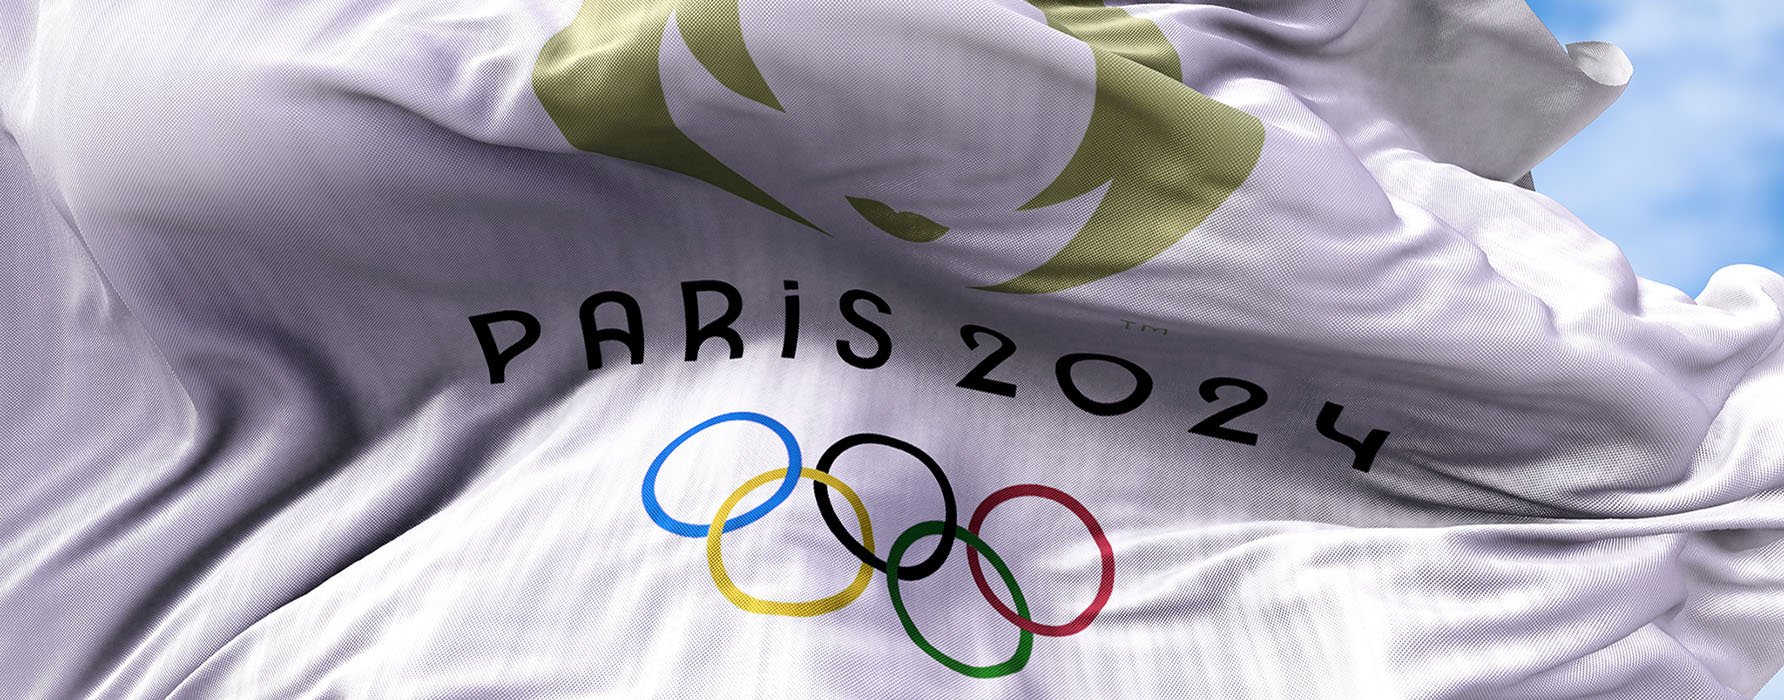 Jeux olympiques : Paris 2024 cherche ses derniers partenaires